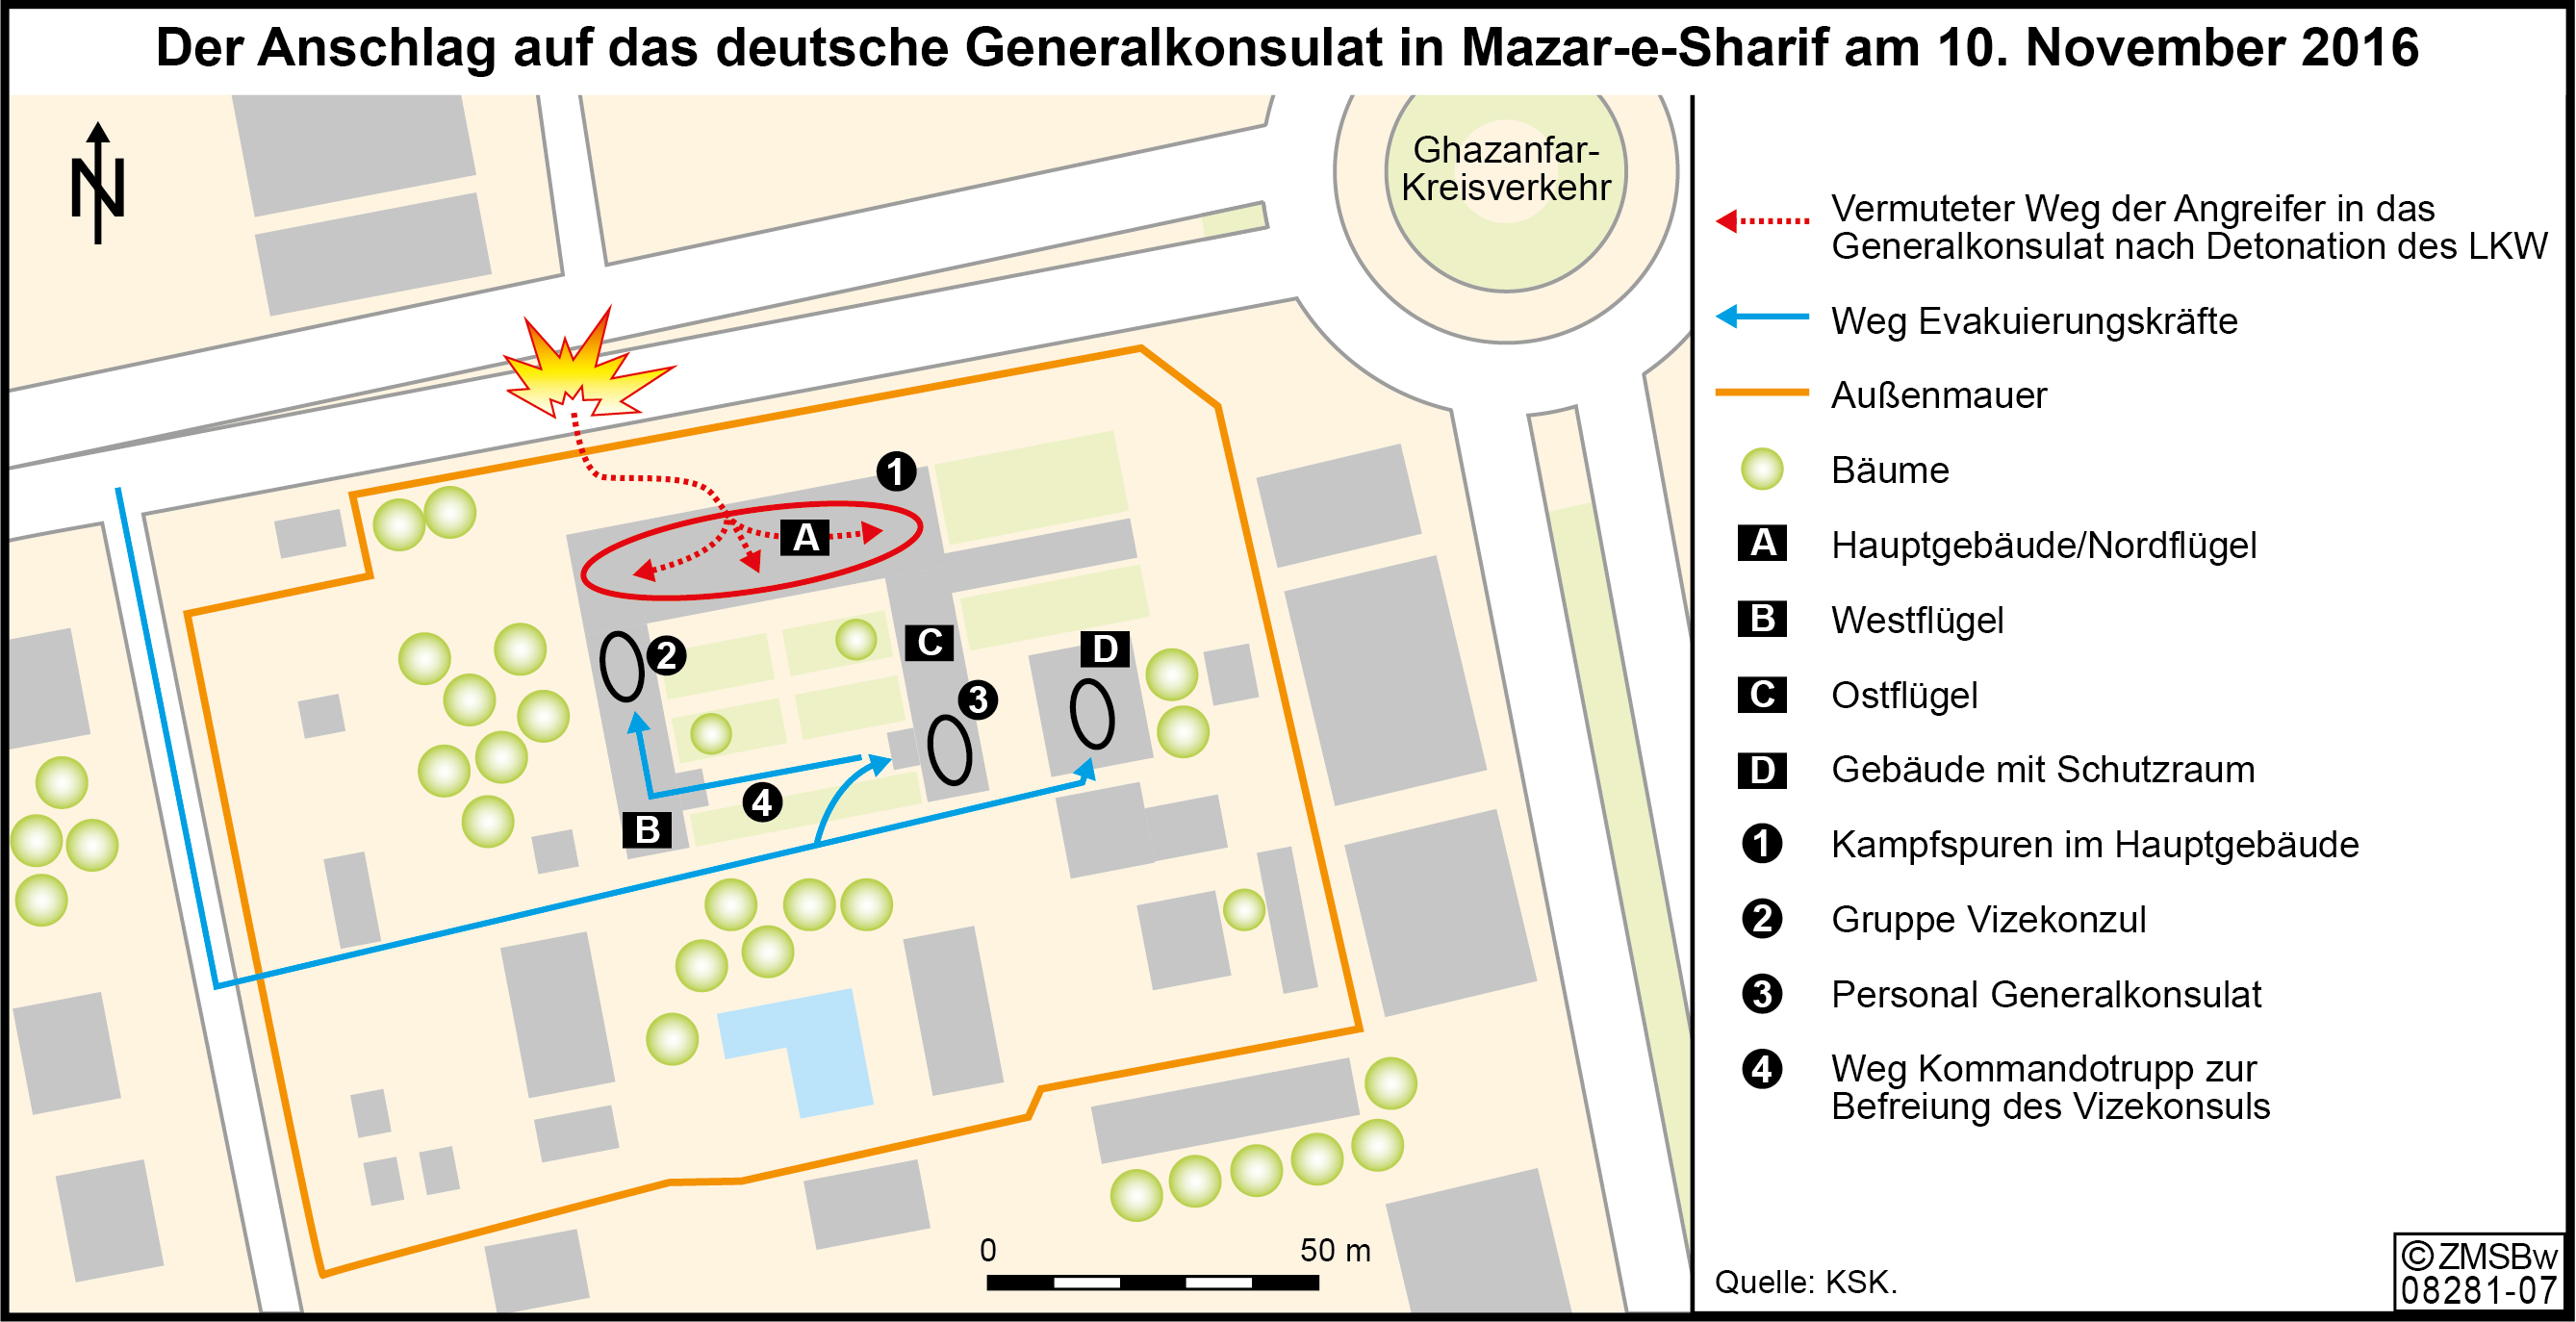 Karte, die den Ablauf der Evakuierungsmission im deutschen Generalkonsulat zeigt